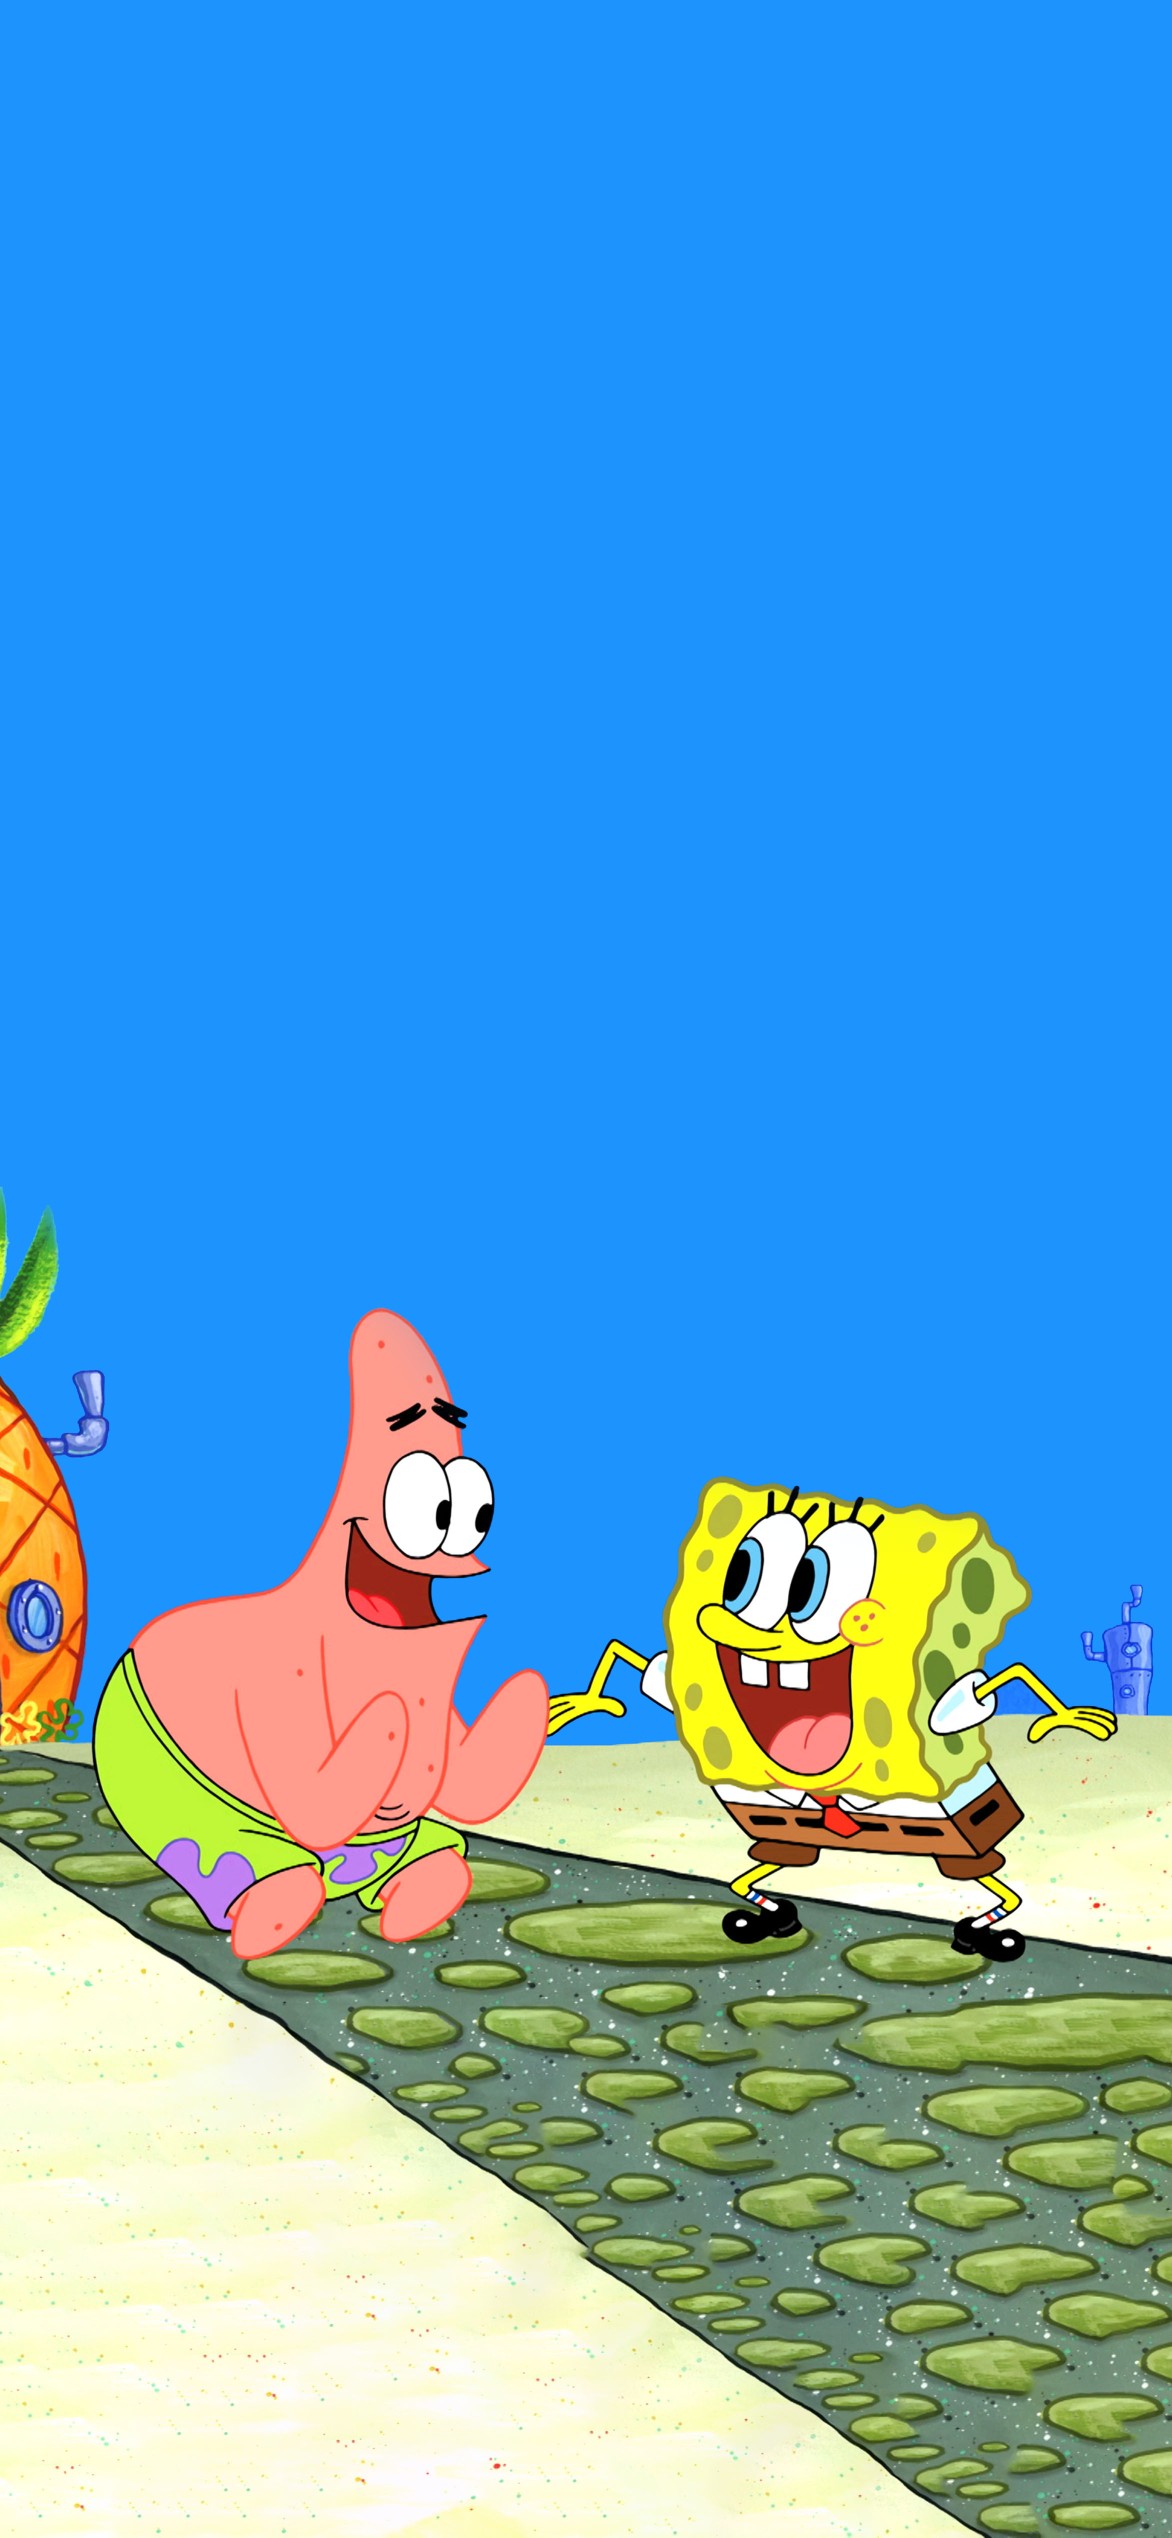 动态壁纸下载-SpongeBob海绵宝宝高清动态壁纸- macw下载站